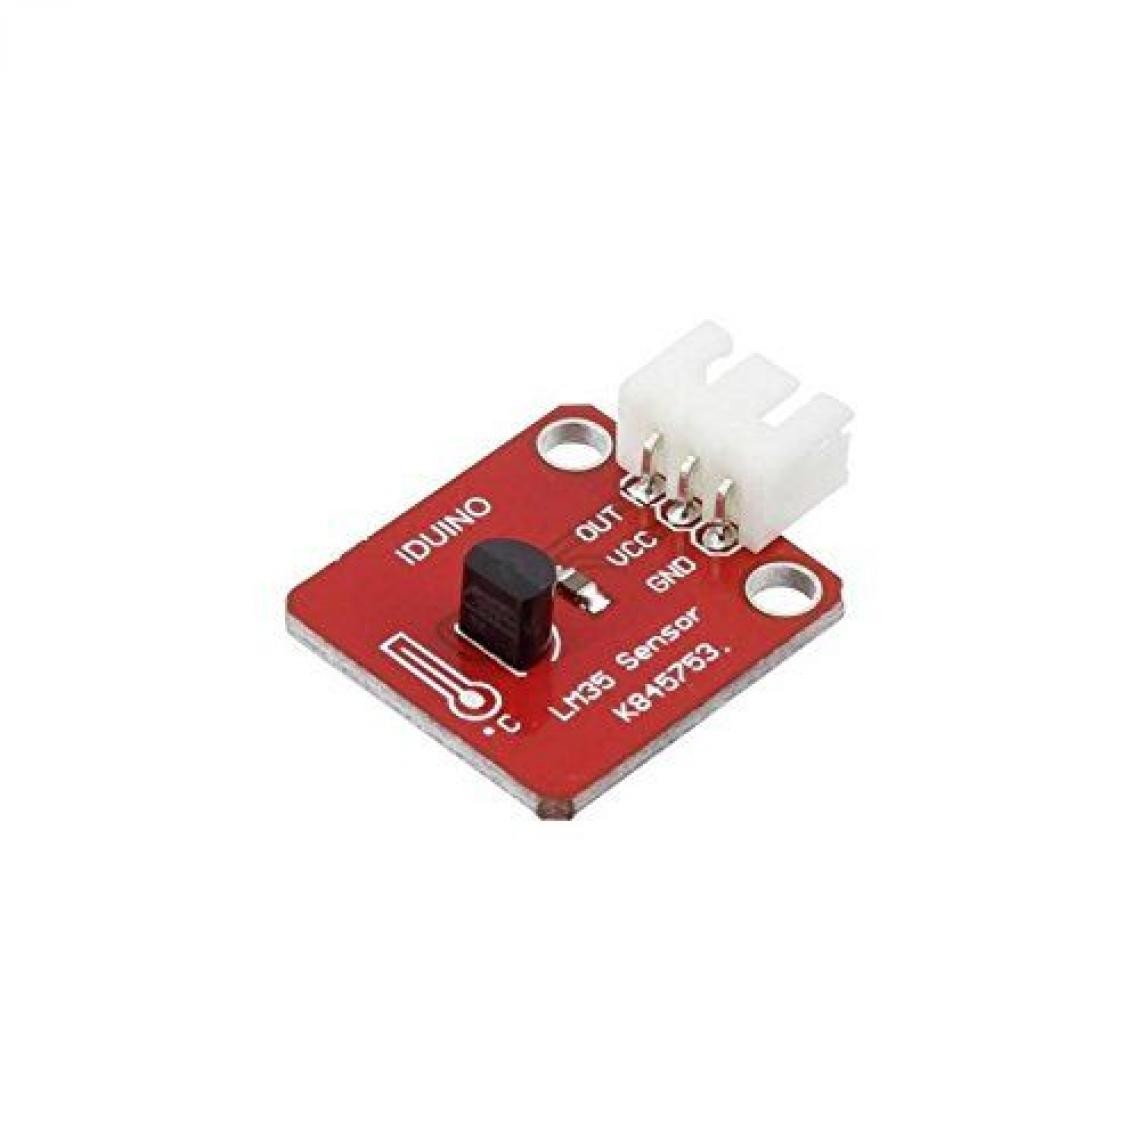 Inconnu - Module capteur de température Iduino 1485308 -55 à +150 °C 1 pc(s) - Autres équipements modulaires